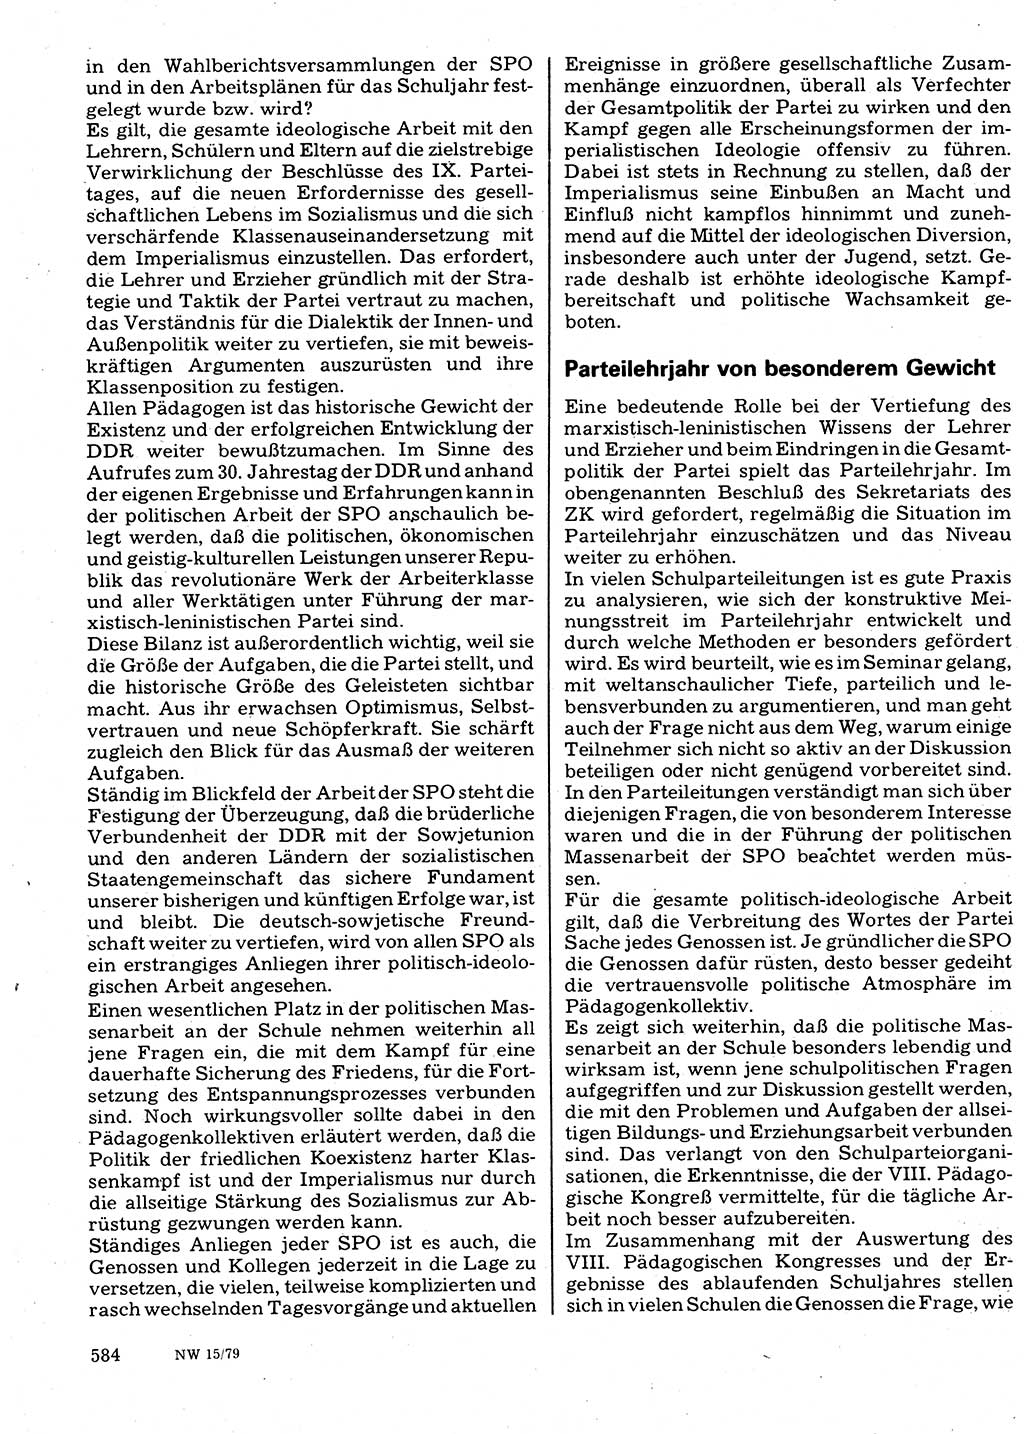 Neuer Weg (NW), Organ des Zentralkomitees (ZK) der SED (Sozialistische Einheitspartei Deutschlands) für Fragen des Parteilebens, 34. Jahrgang [Deutsche Demokratische Republik (DDR)] 1979, Seite 584 (NW ZK SED DDR 1979, S. 584)